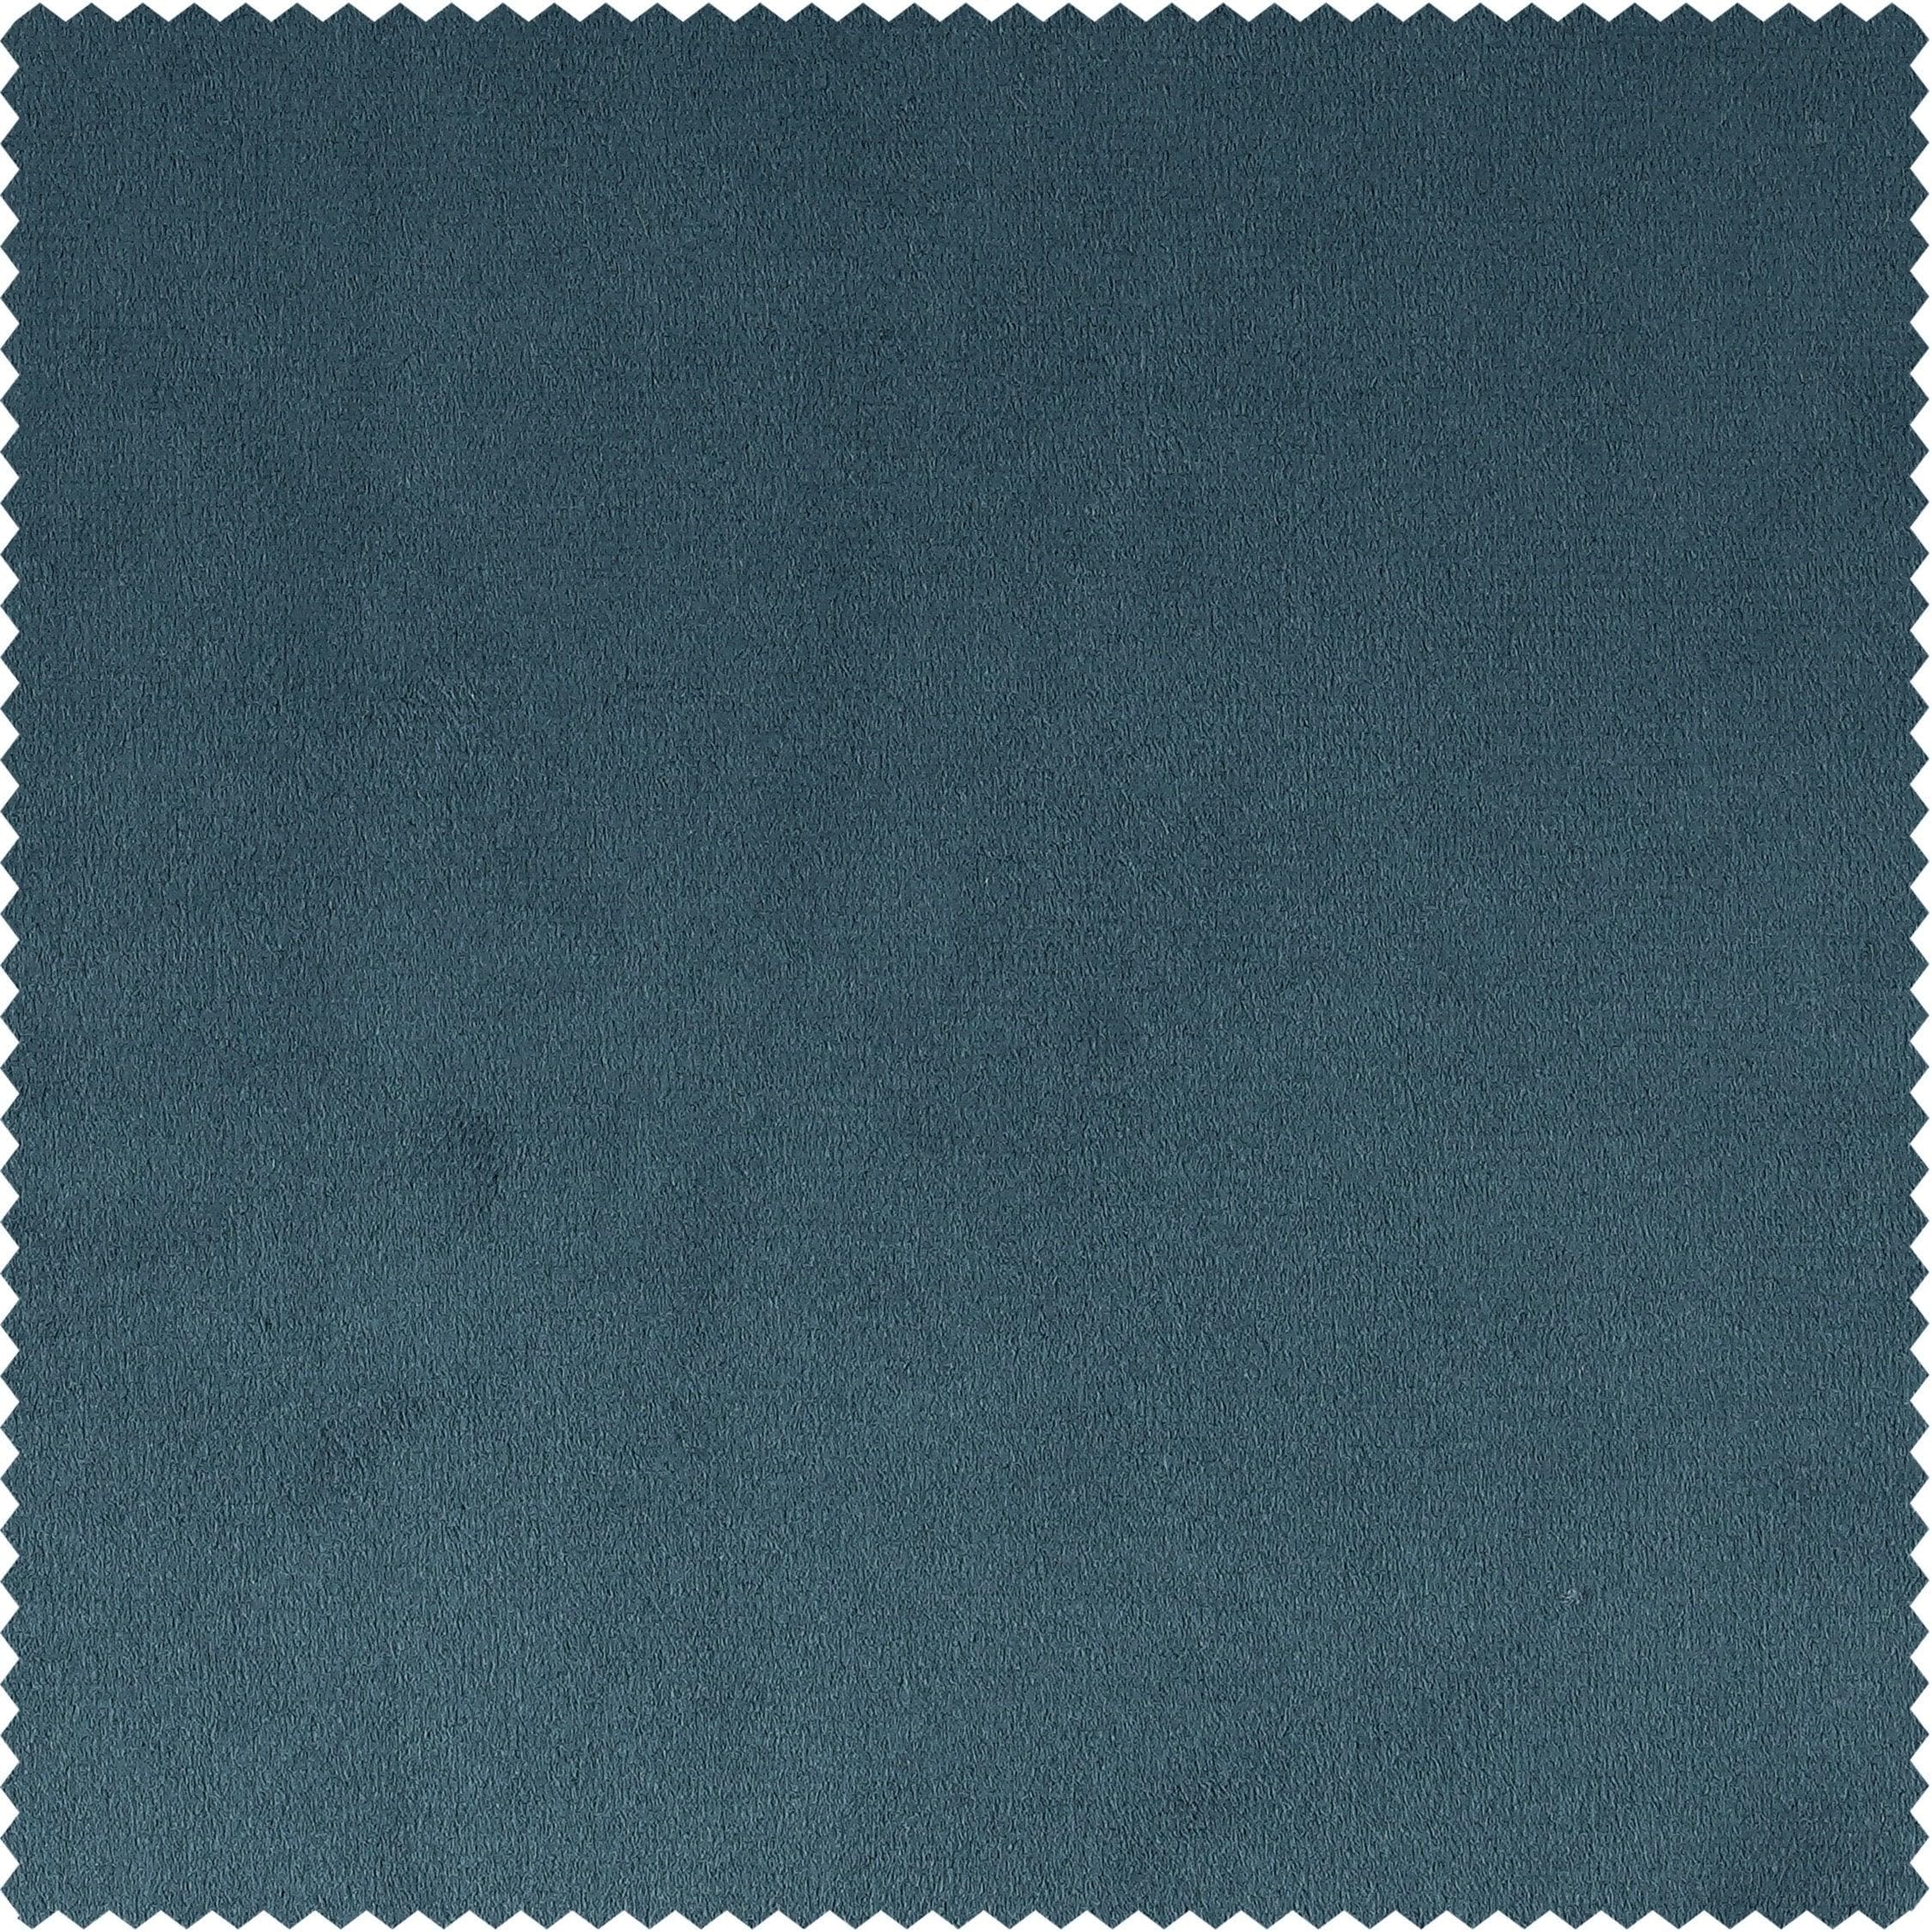 Caspian Blue Plush Velvet Swatch